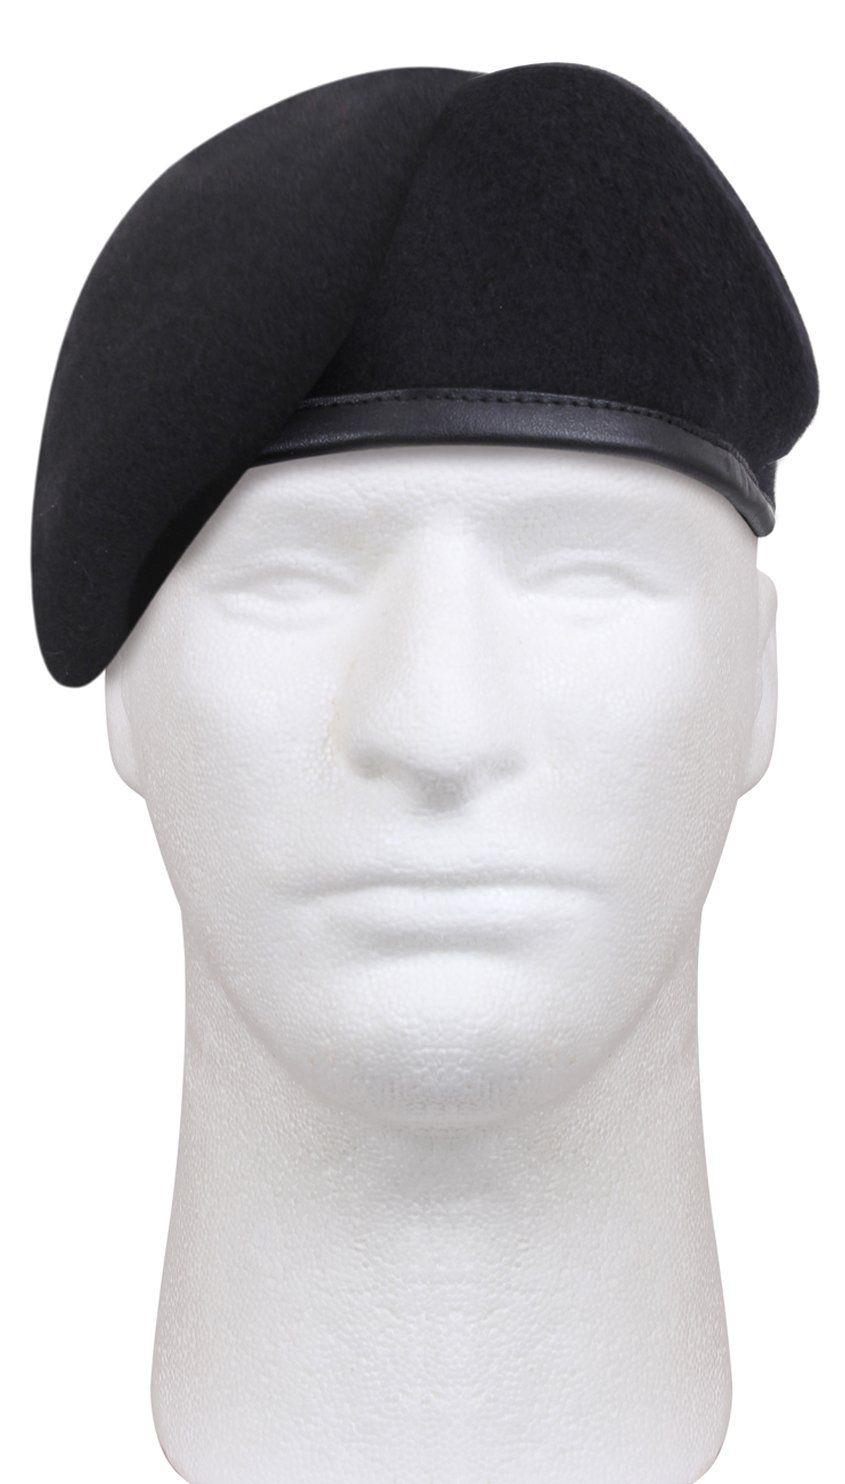 Preformed and shaved black beret